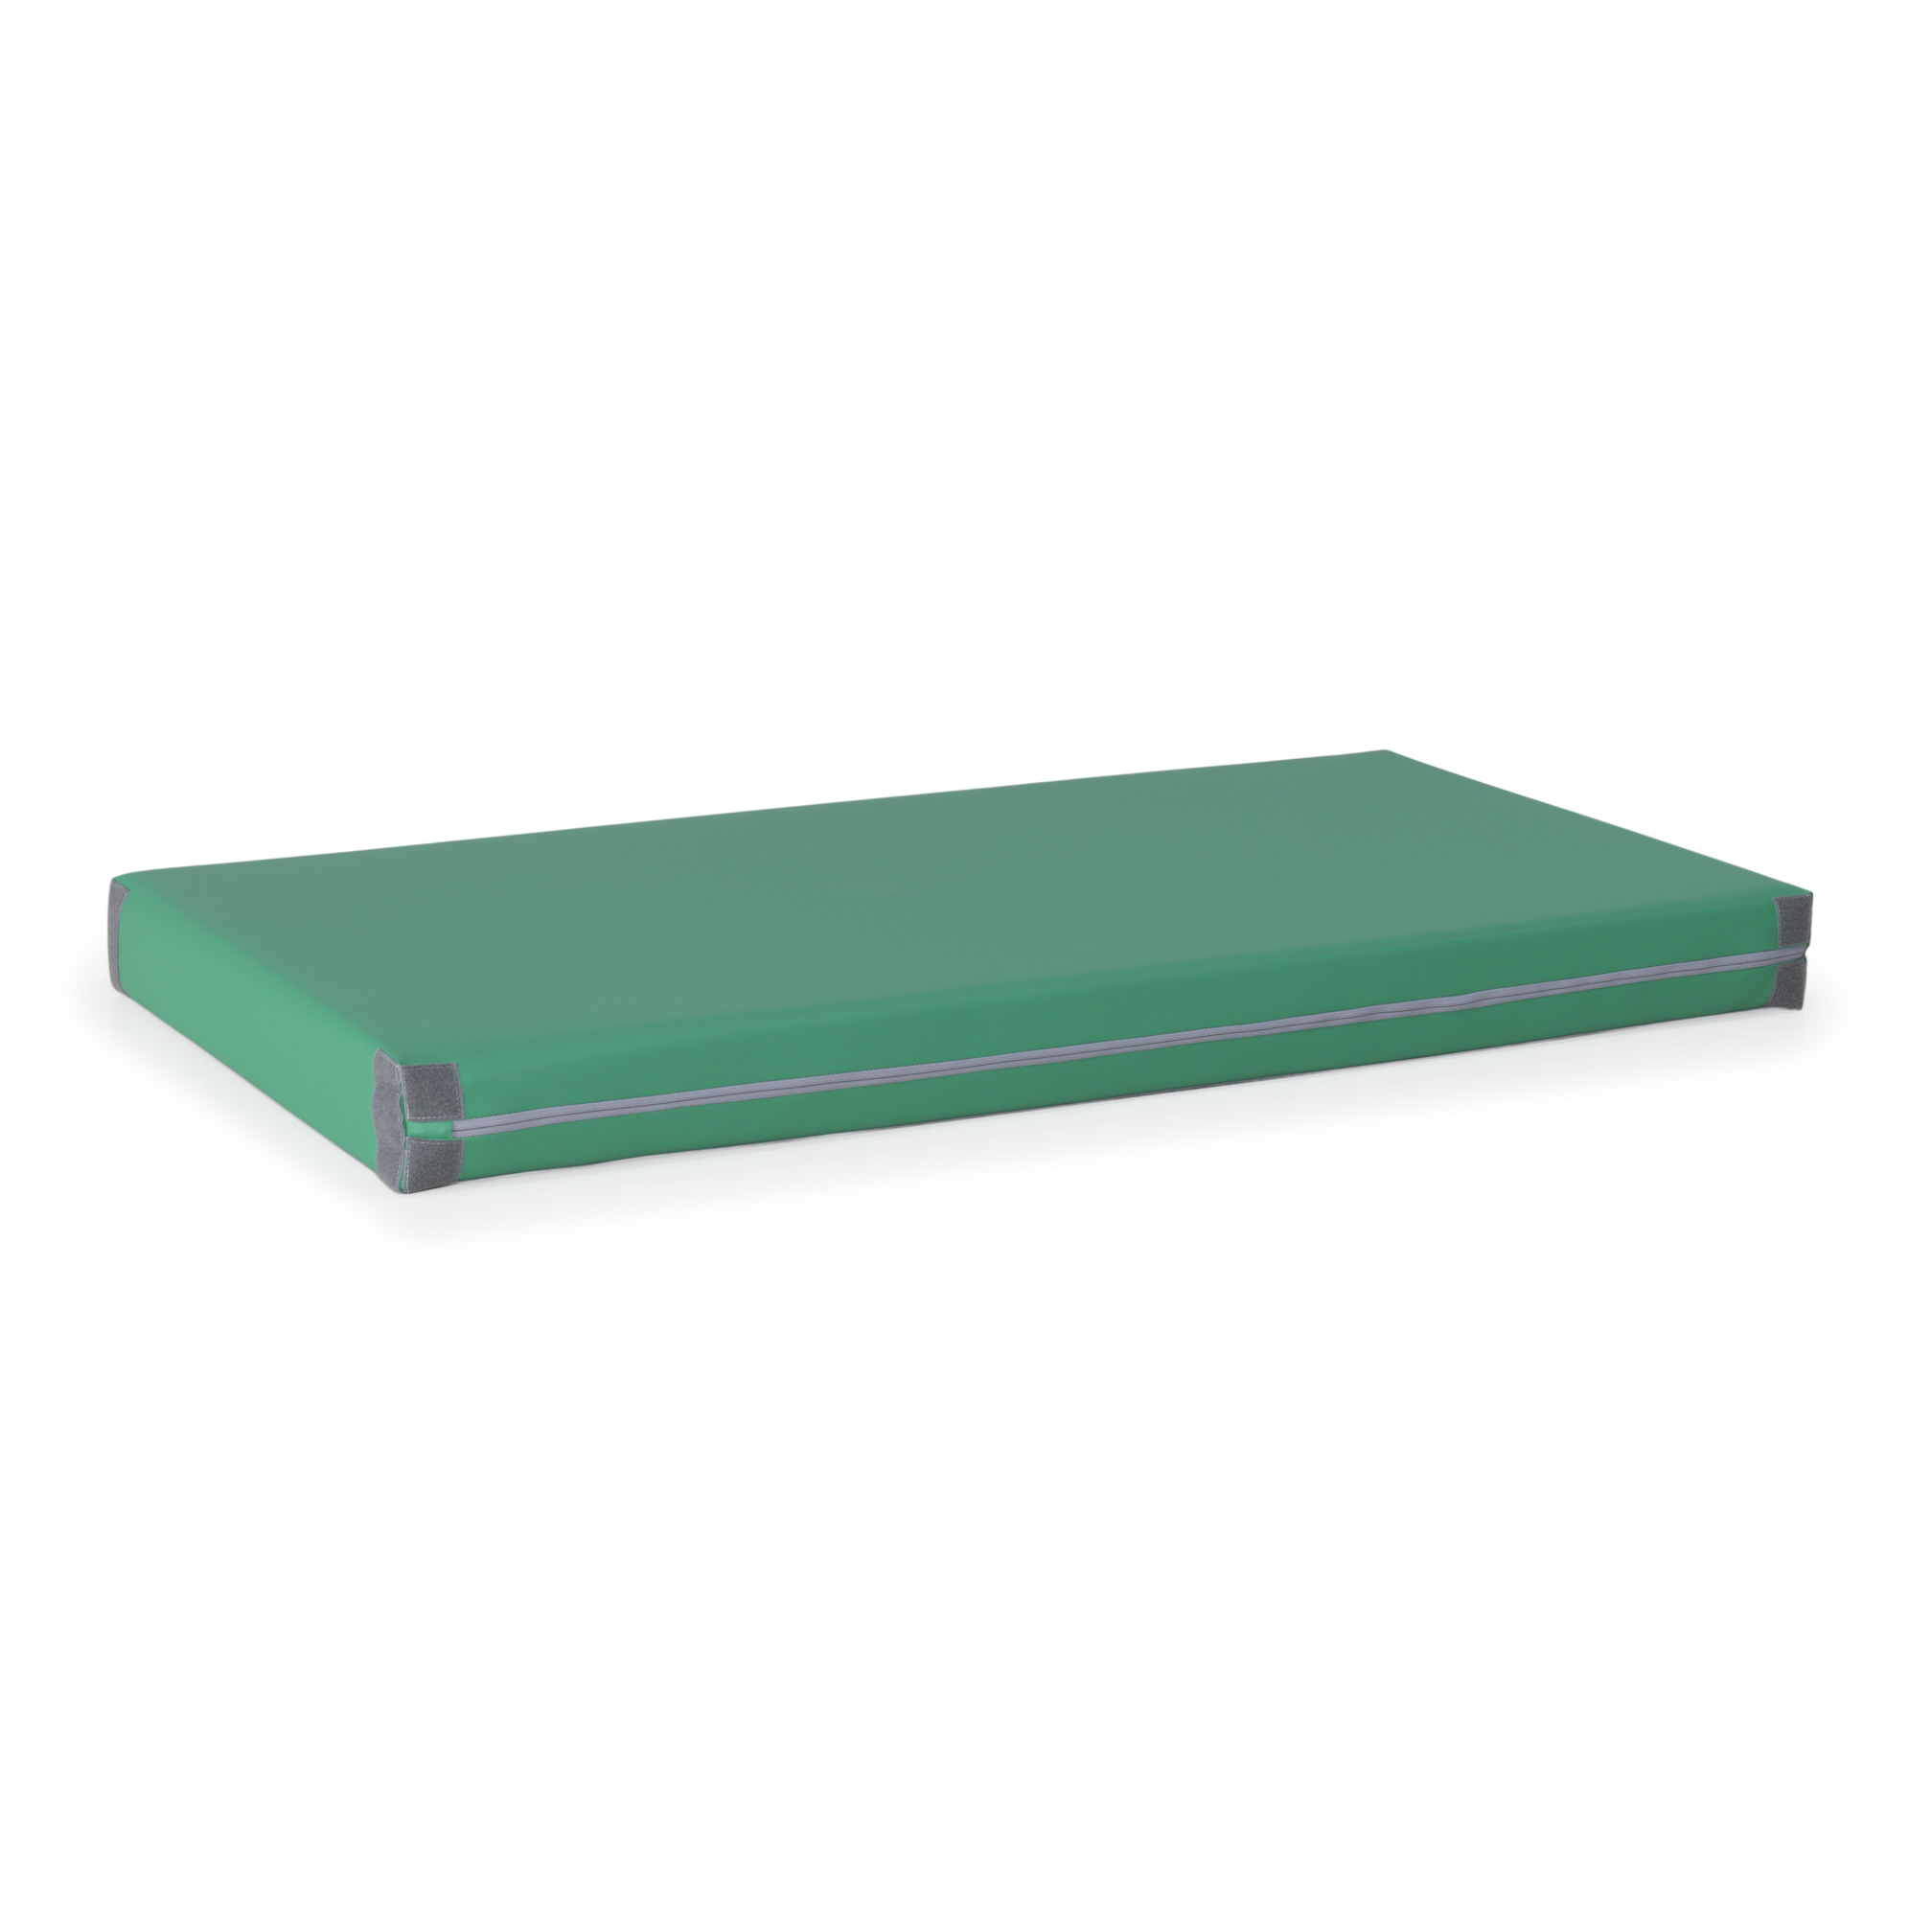 Playing mat 150x80x12 cm, green